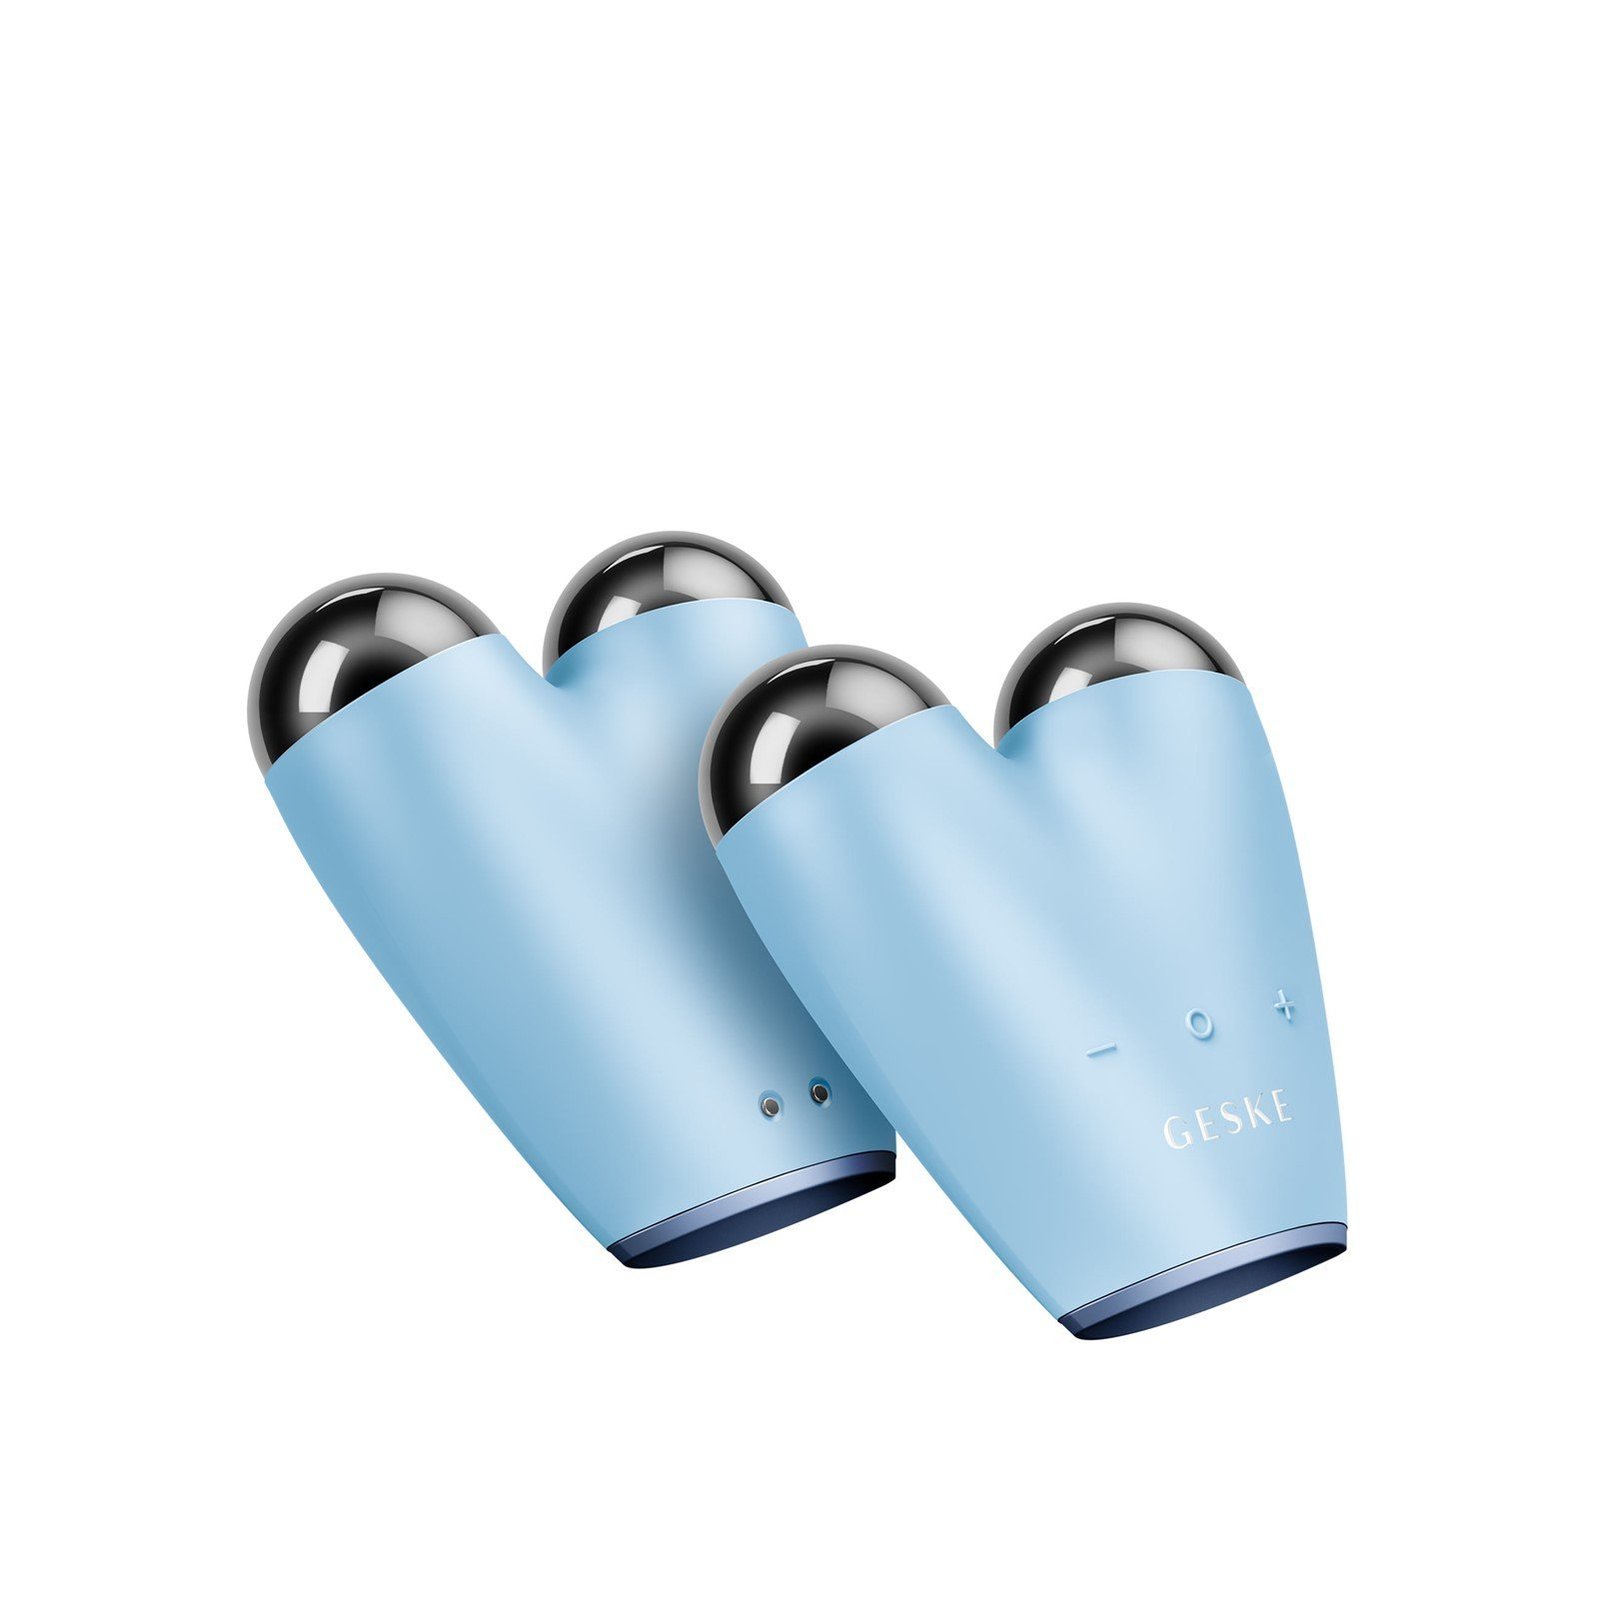 GESKE MicroCurrent Face-Lifter 6-In-1 Aquamarine